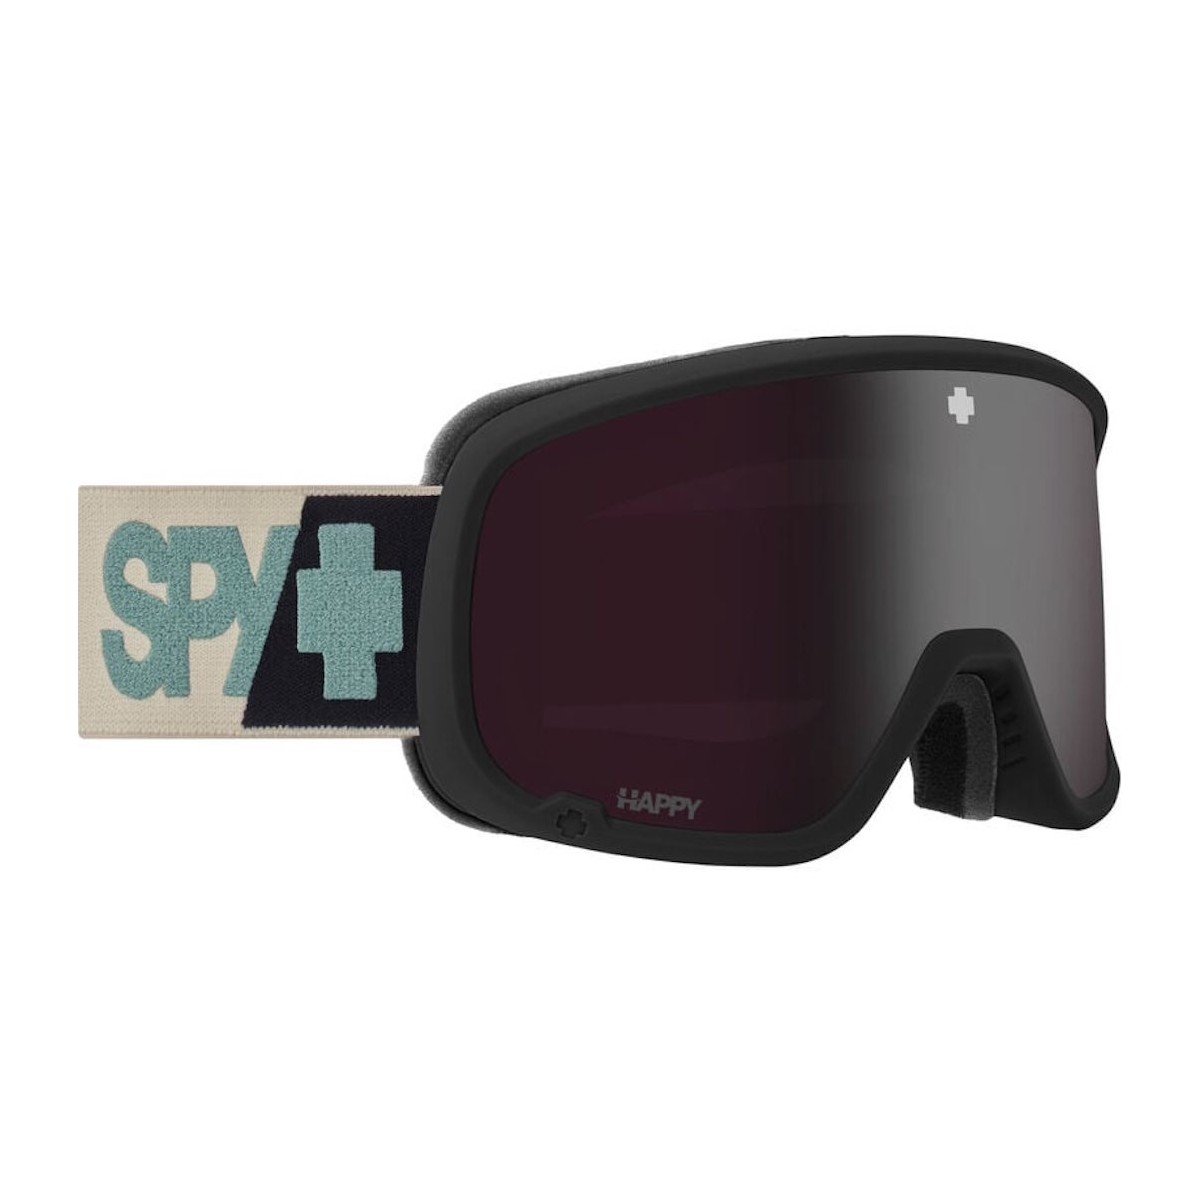 SPY MARSHALL 2.0 SNOW goggles - warm gray